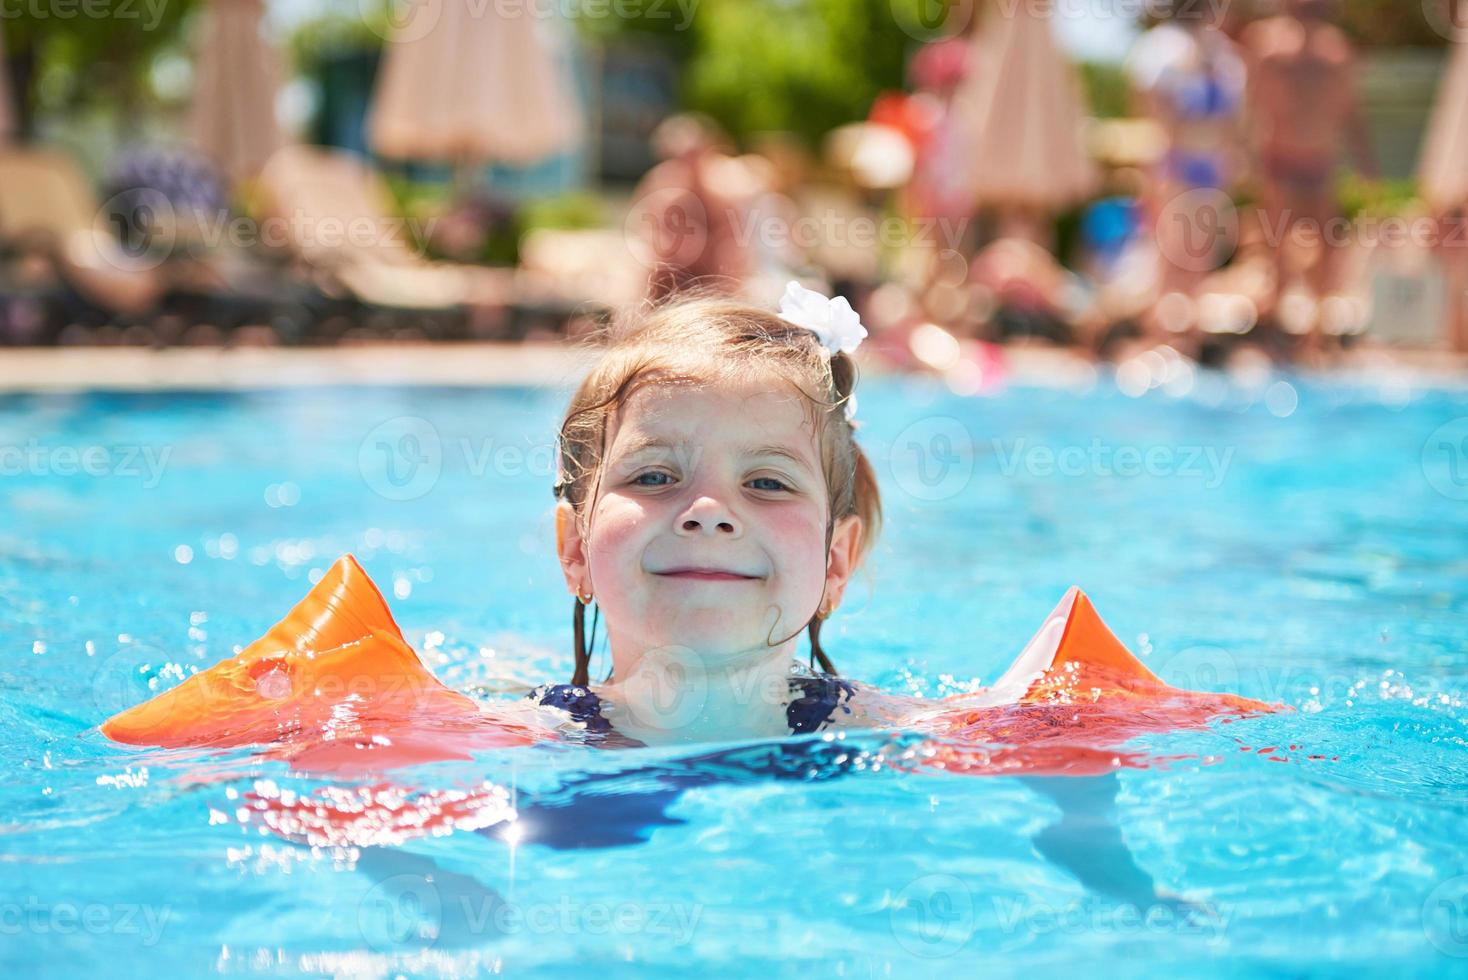 garota nadando na piscina em braceletes em um dia quente de verão. foto